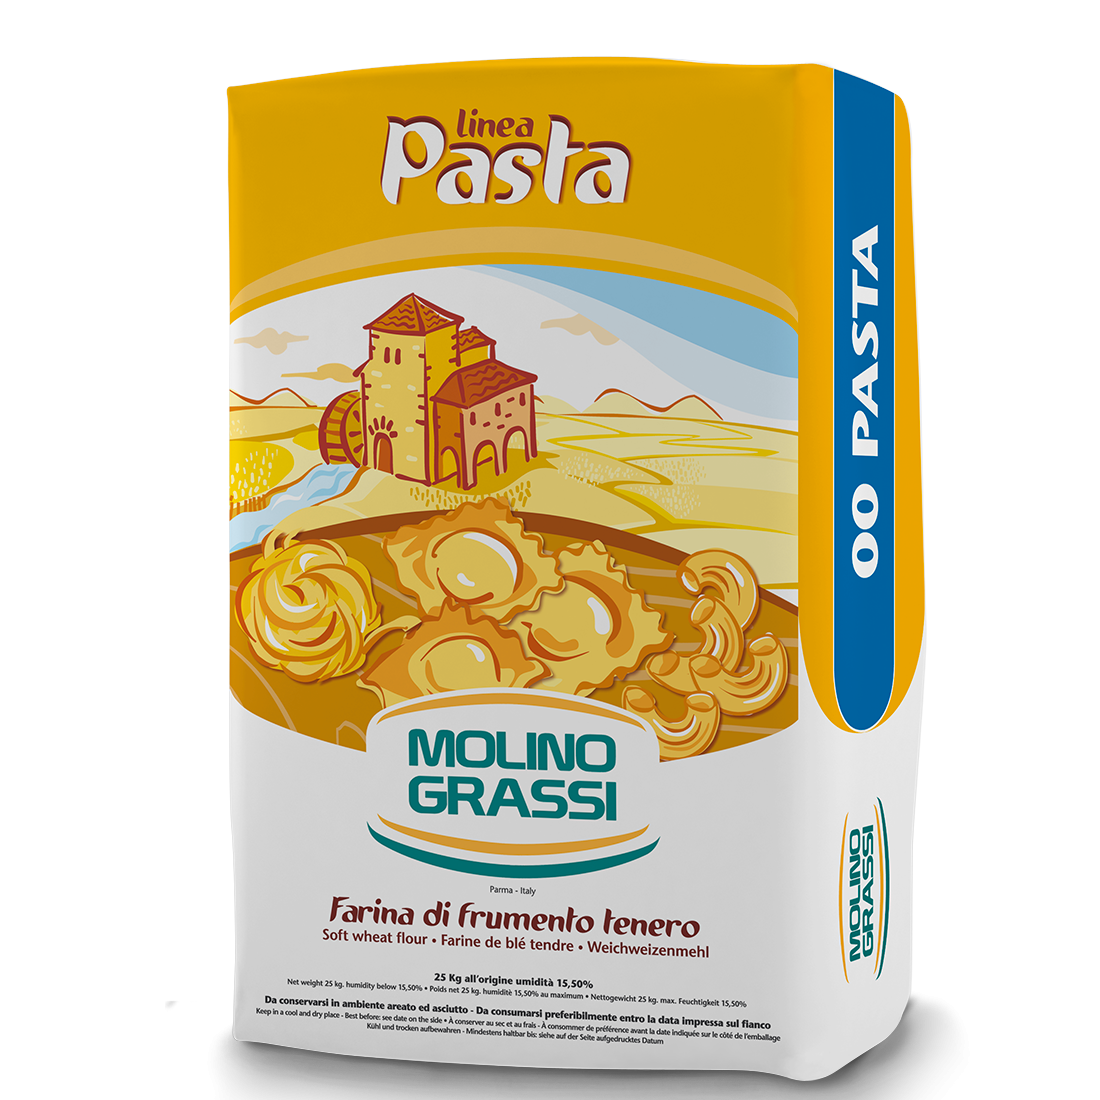 Molino Grassi Soft Wheat Flour For Fresh Pasta Grano Tenero, 00 Flour, 1kg - 2.2 lb